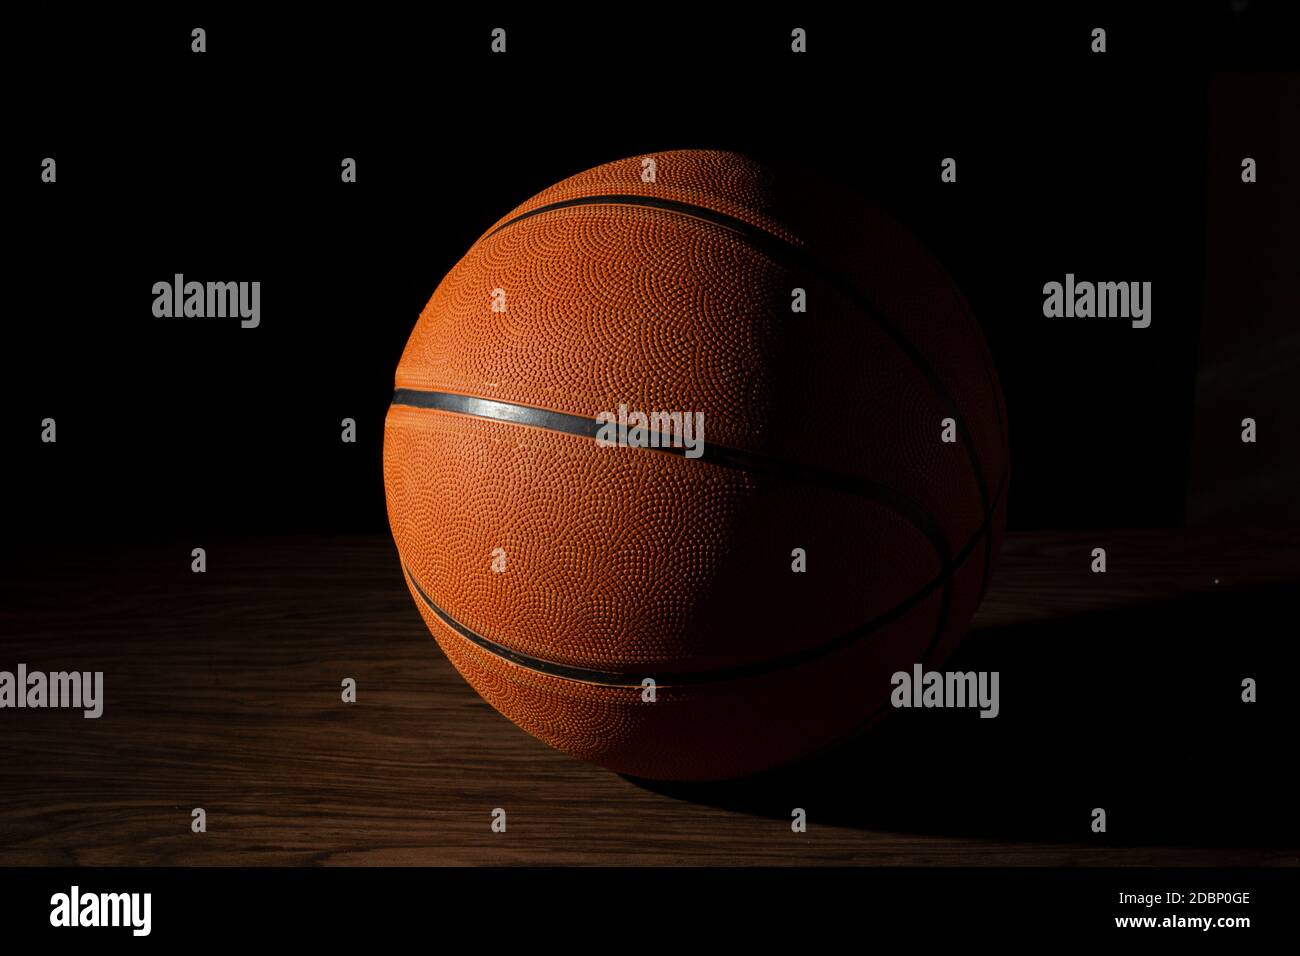 Ballon de basket-ball sur fond sombre Banque D'Images